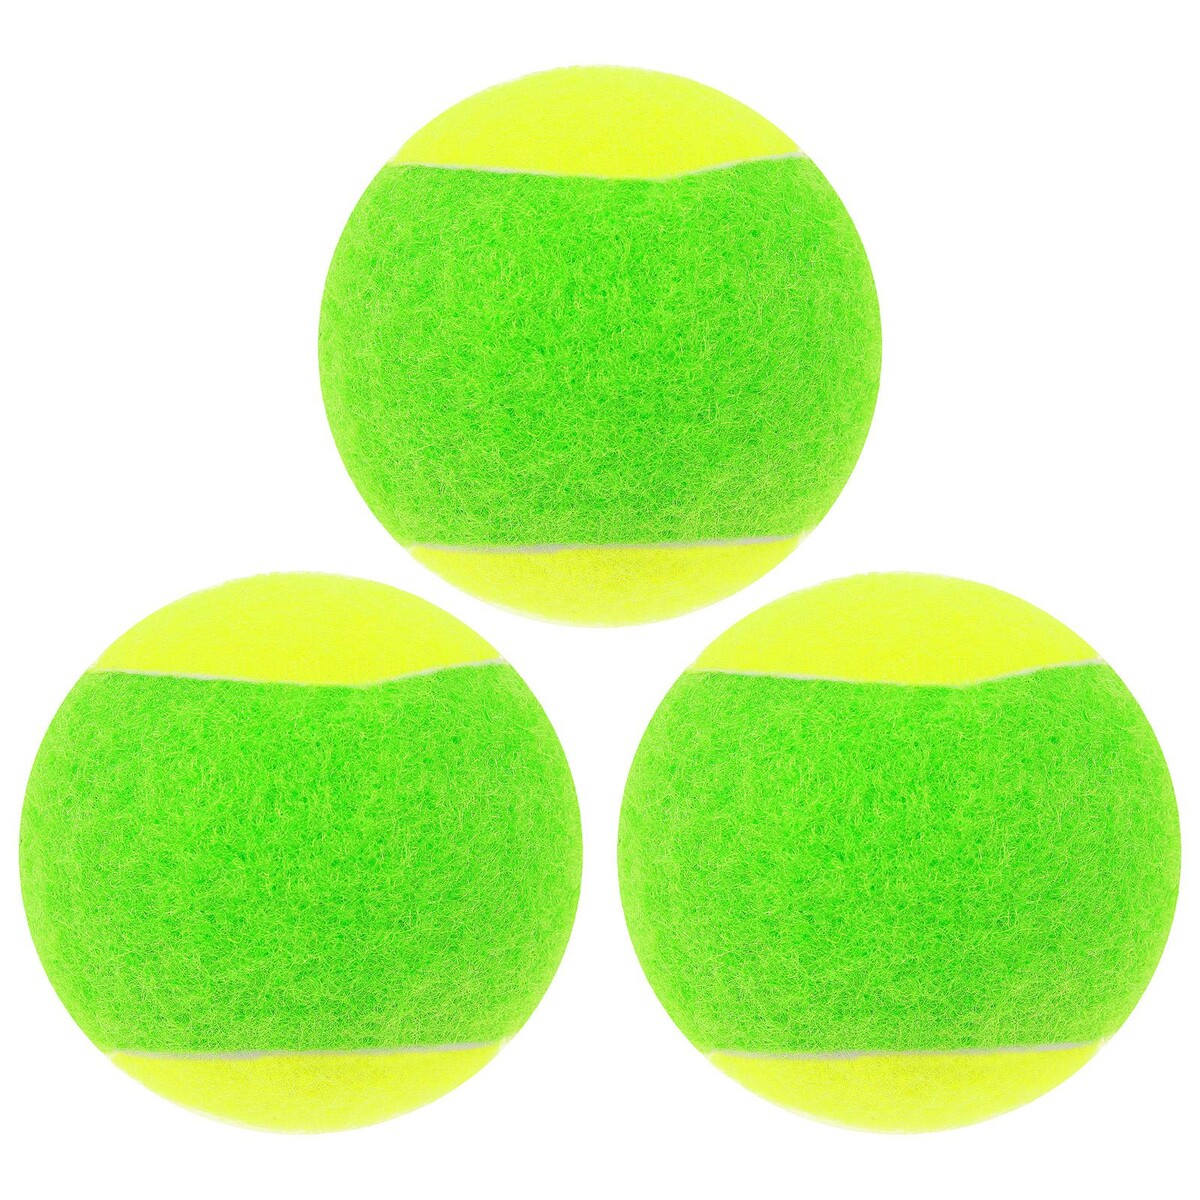 Набор мячей для большого тенниса onlytop swidon, 3 шт. ракетка для большого тенниса head tour pro gr4 233422 желто